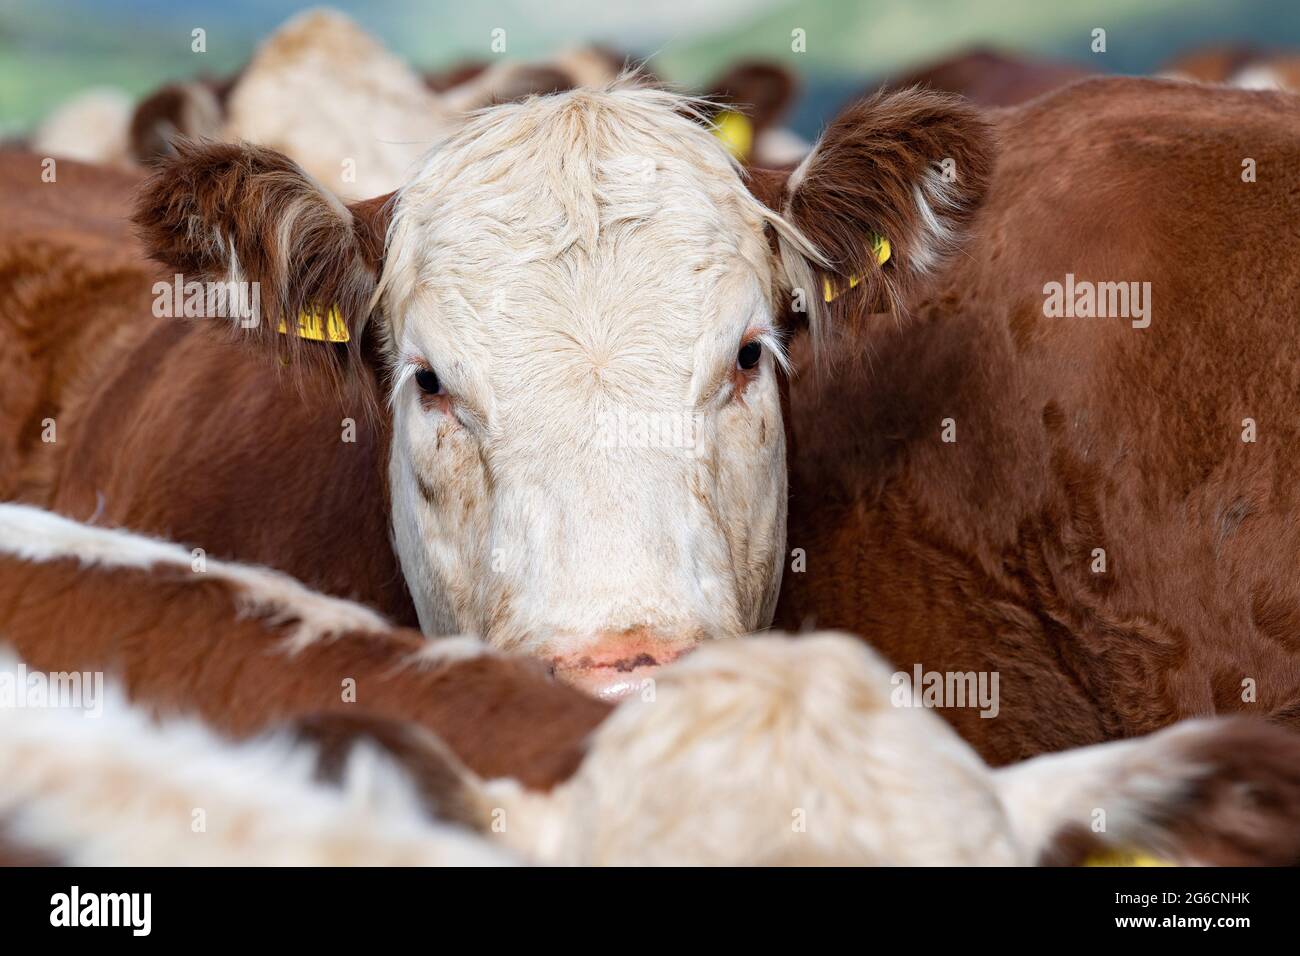 Nahaufnahme einer Herde von Hereford-Rindern, einer einheimischen britischen Rasse, Cumbria, Großbritannien. Stockfoto